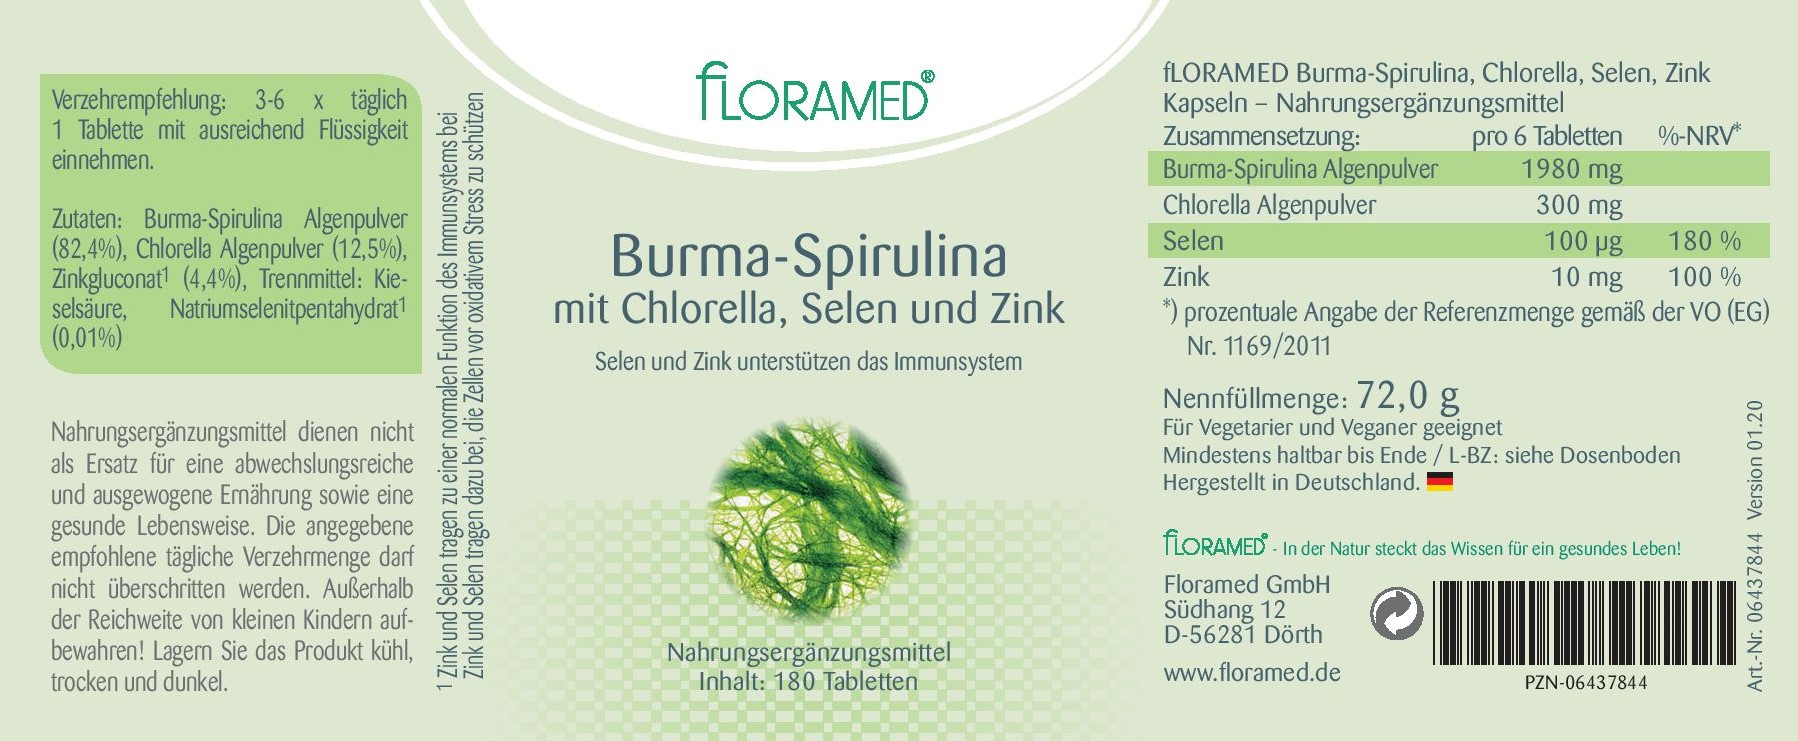 Floramed Burma-Spirulina mit Chlorella, Selen und Zink